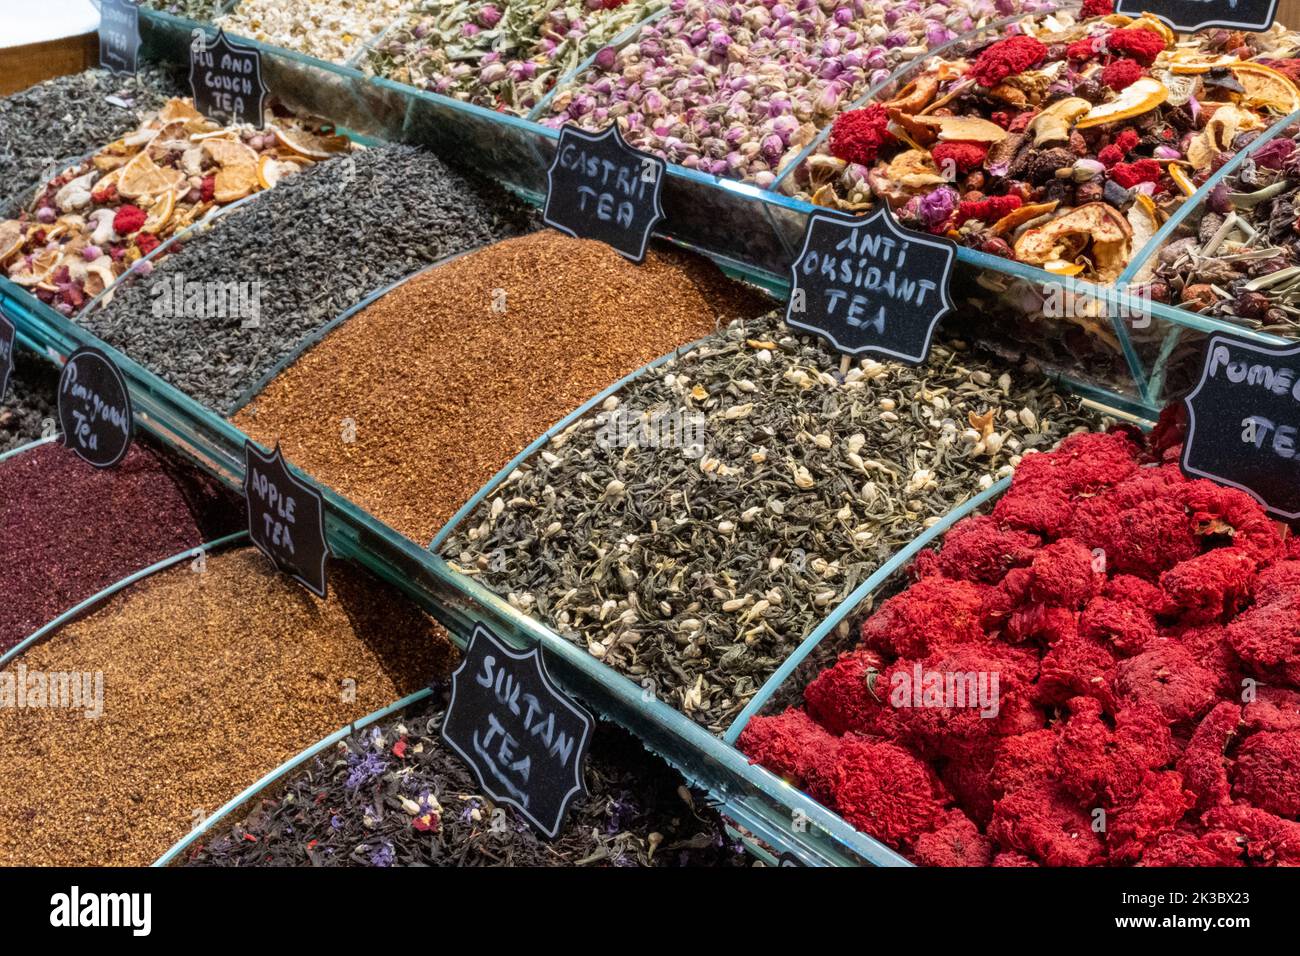 Images de la cuisine colorée du bazar de Mısır, de la cuisine turque traditionnelle à Istanbul, du shopping dans un bazar, des stands de marché d'arcade Banque D'Images